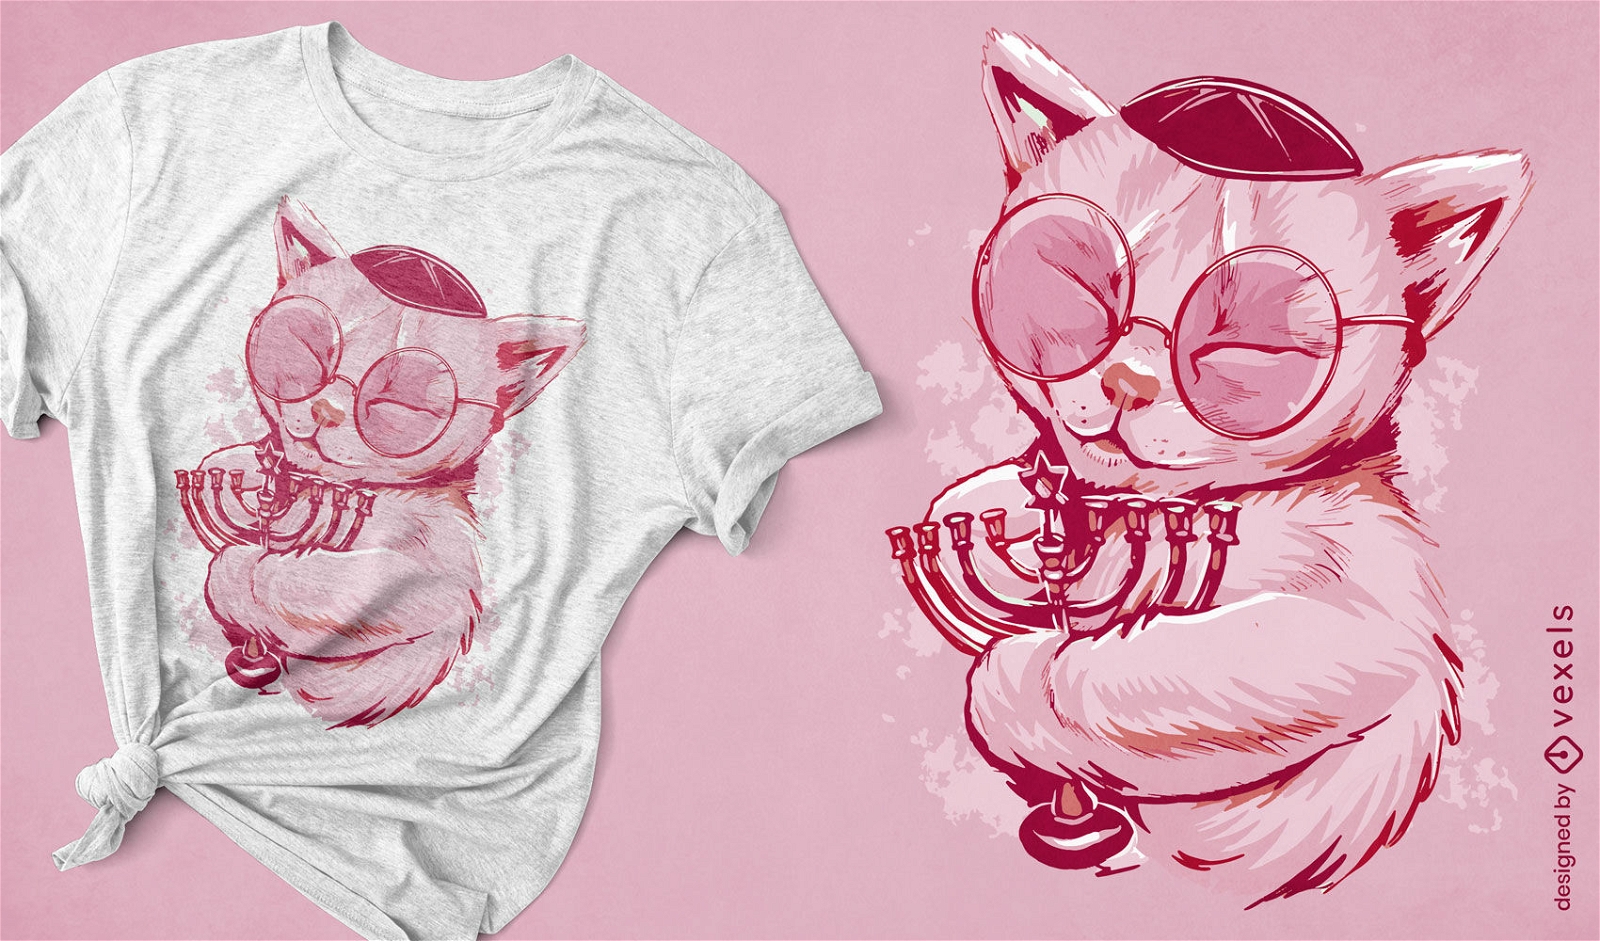 Gato judeu com design de camiseta menor?